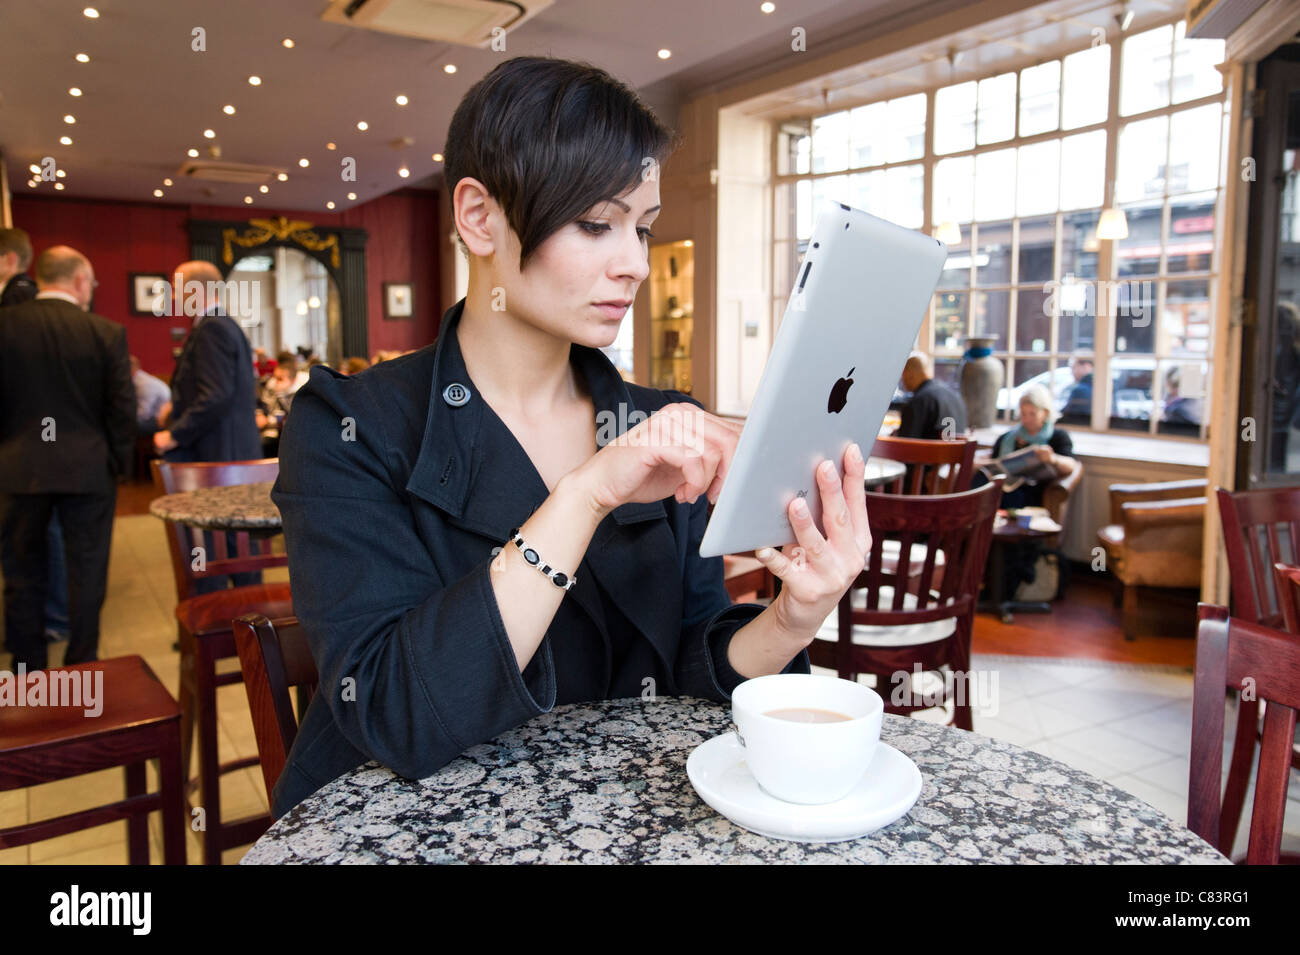 Junge Frau beim Surfen im Internet auf einem Apple iPad Tablet Computer mit gratis Kaffee shop Wi Fi, London, UK Stockfoto